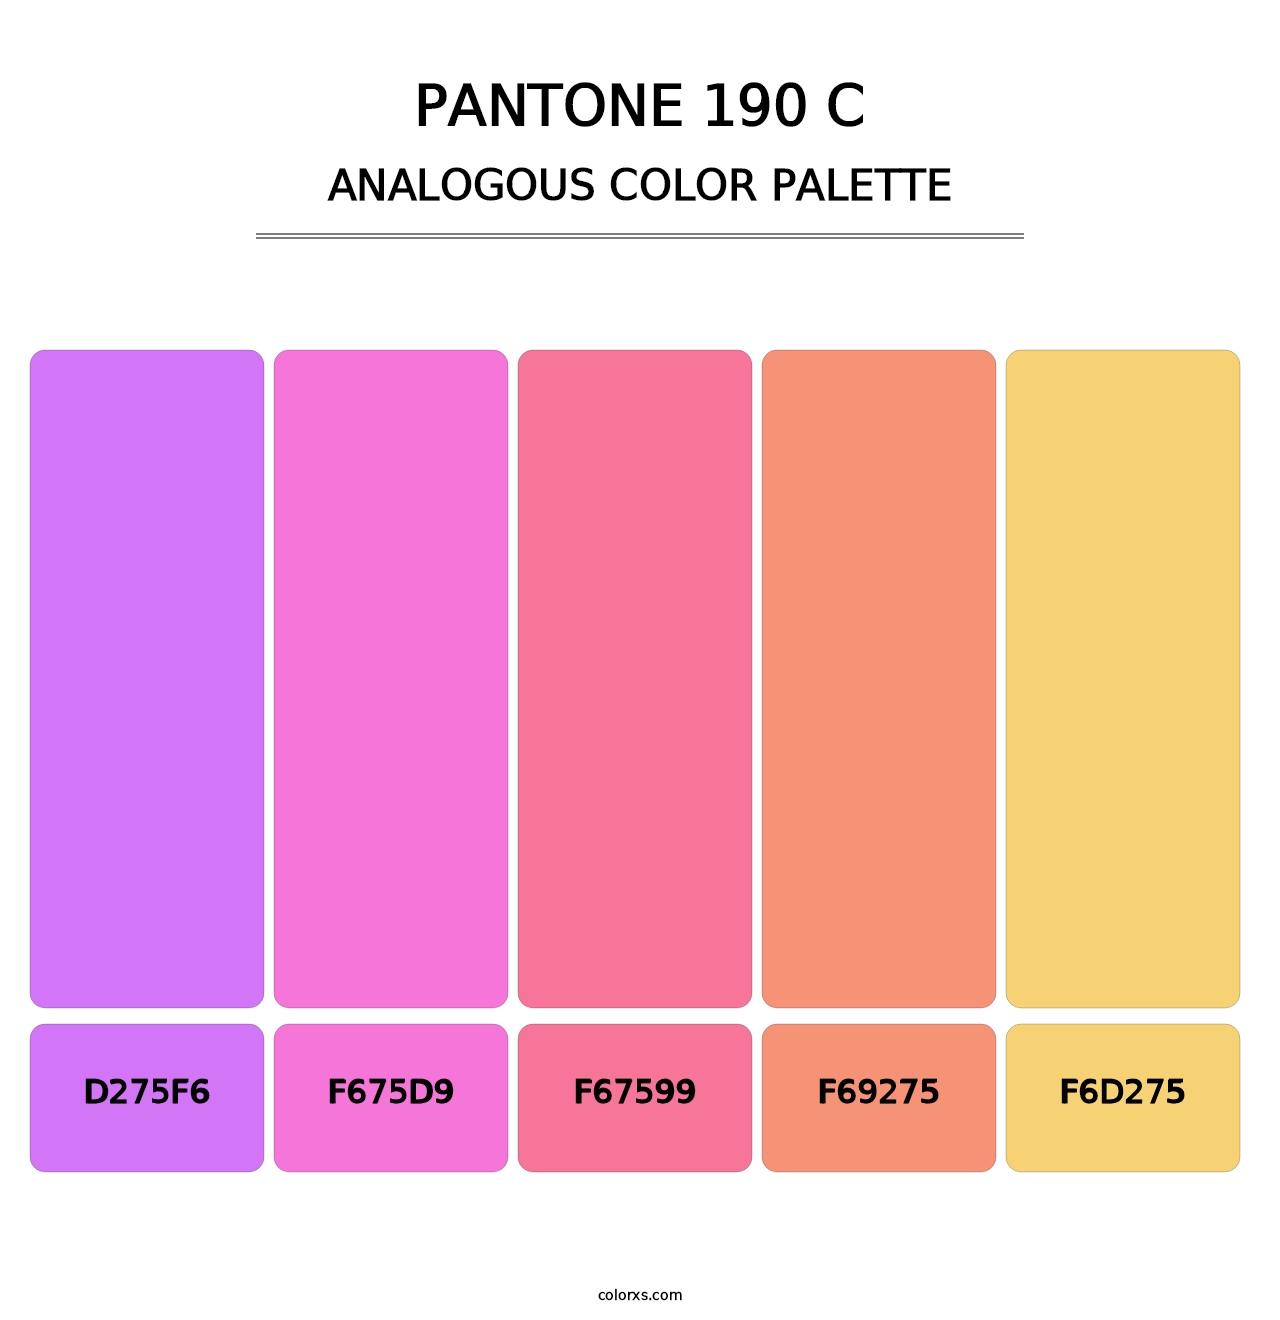 PANTONE 190 C - Analogous Color Palette